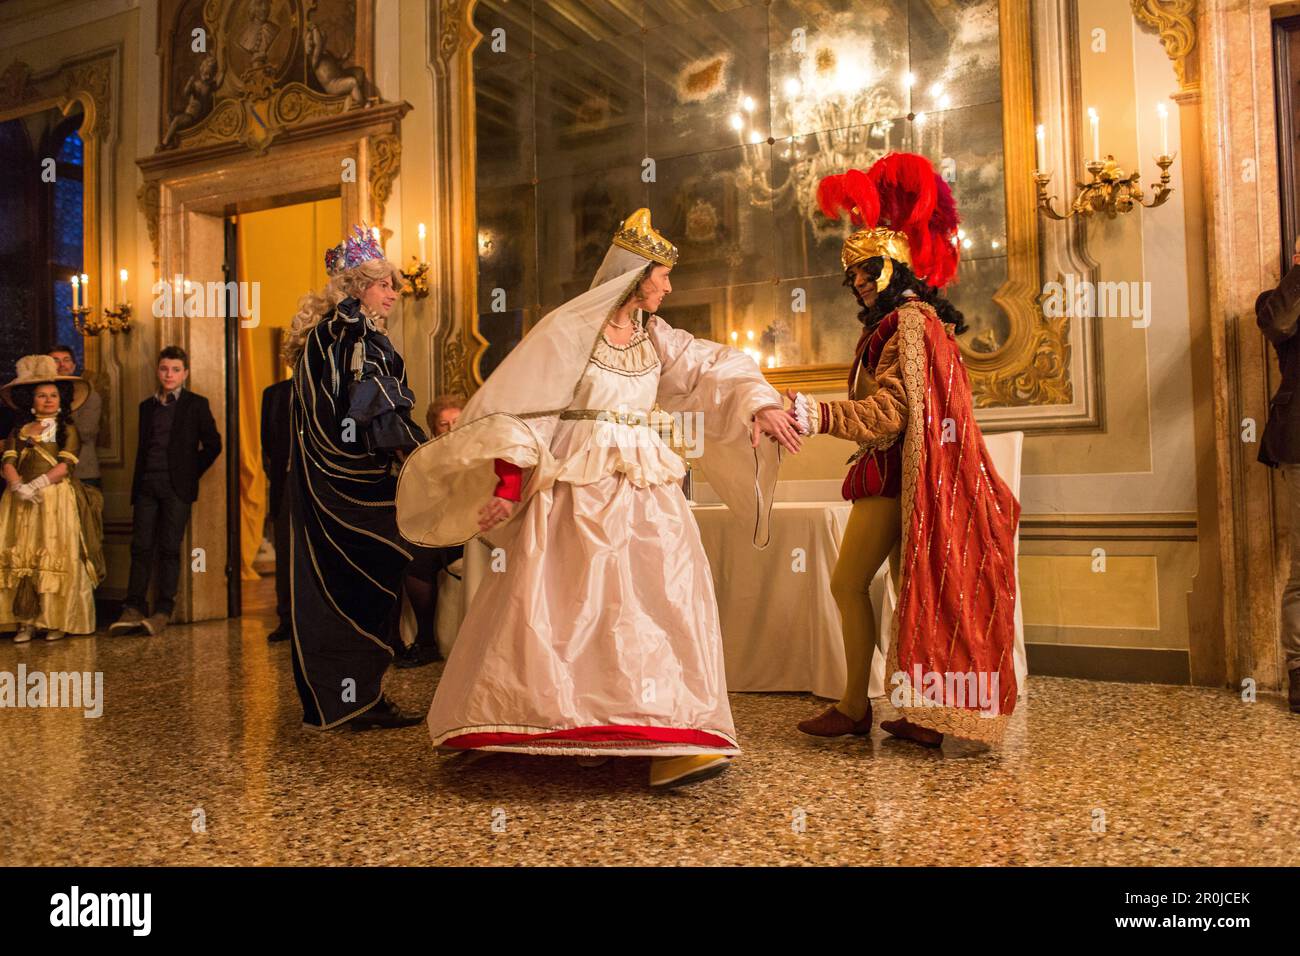 Carnaval, invités dansant en costumes, Palazzo Zeno ai Frari, piano nobile, noble étage, boule privée masquée, Venise, Italie Banque D'Images